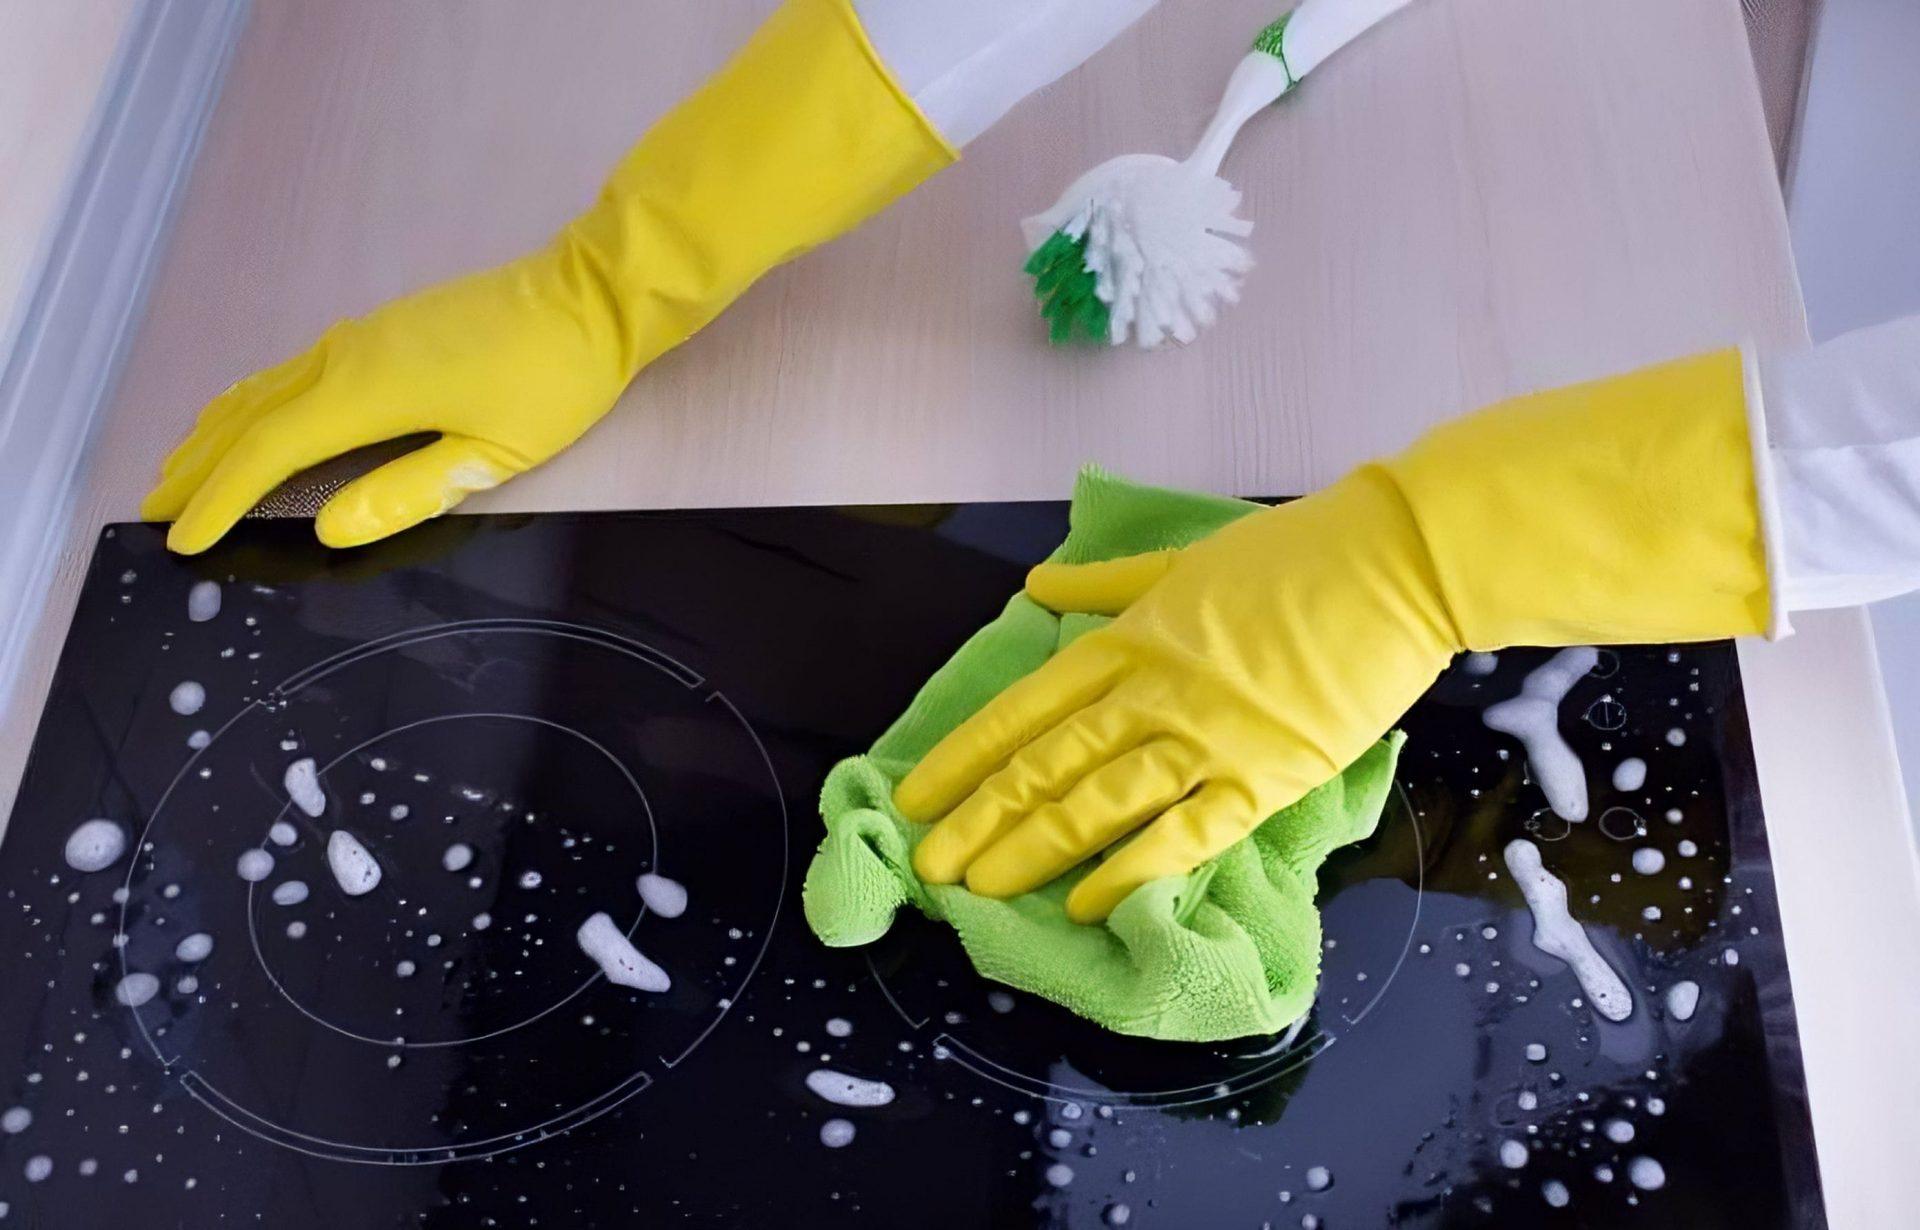 Comment nettoyer une plaque à induction efficacement ?  Fait maison,  Produits de nettoyage diy, Comment nettoyer